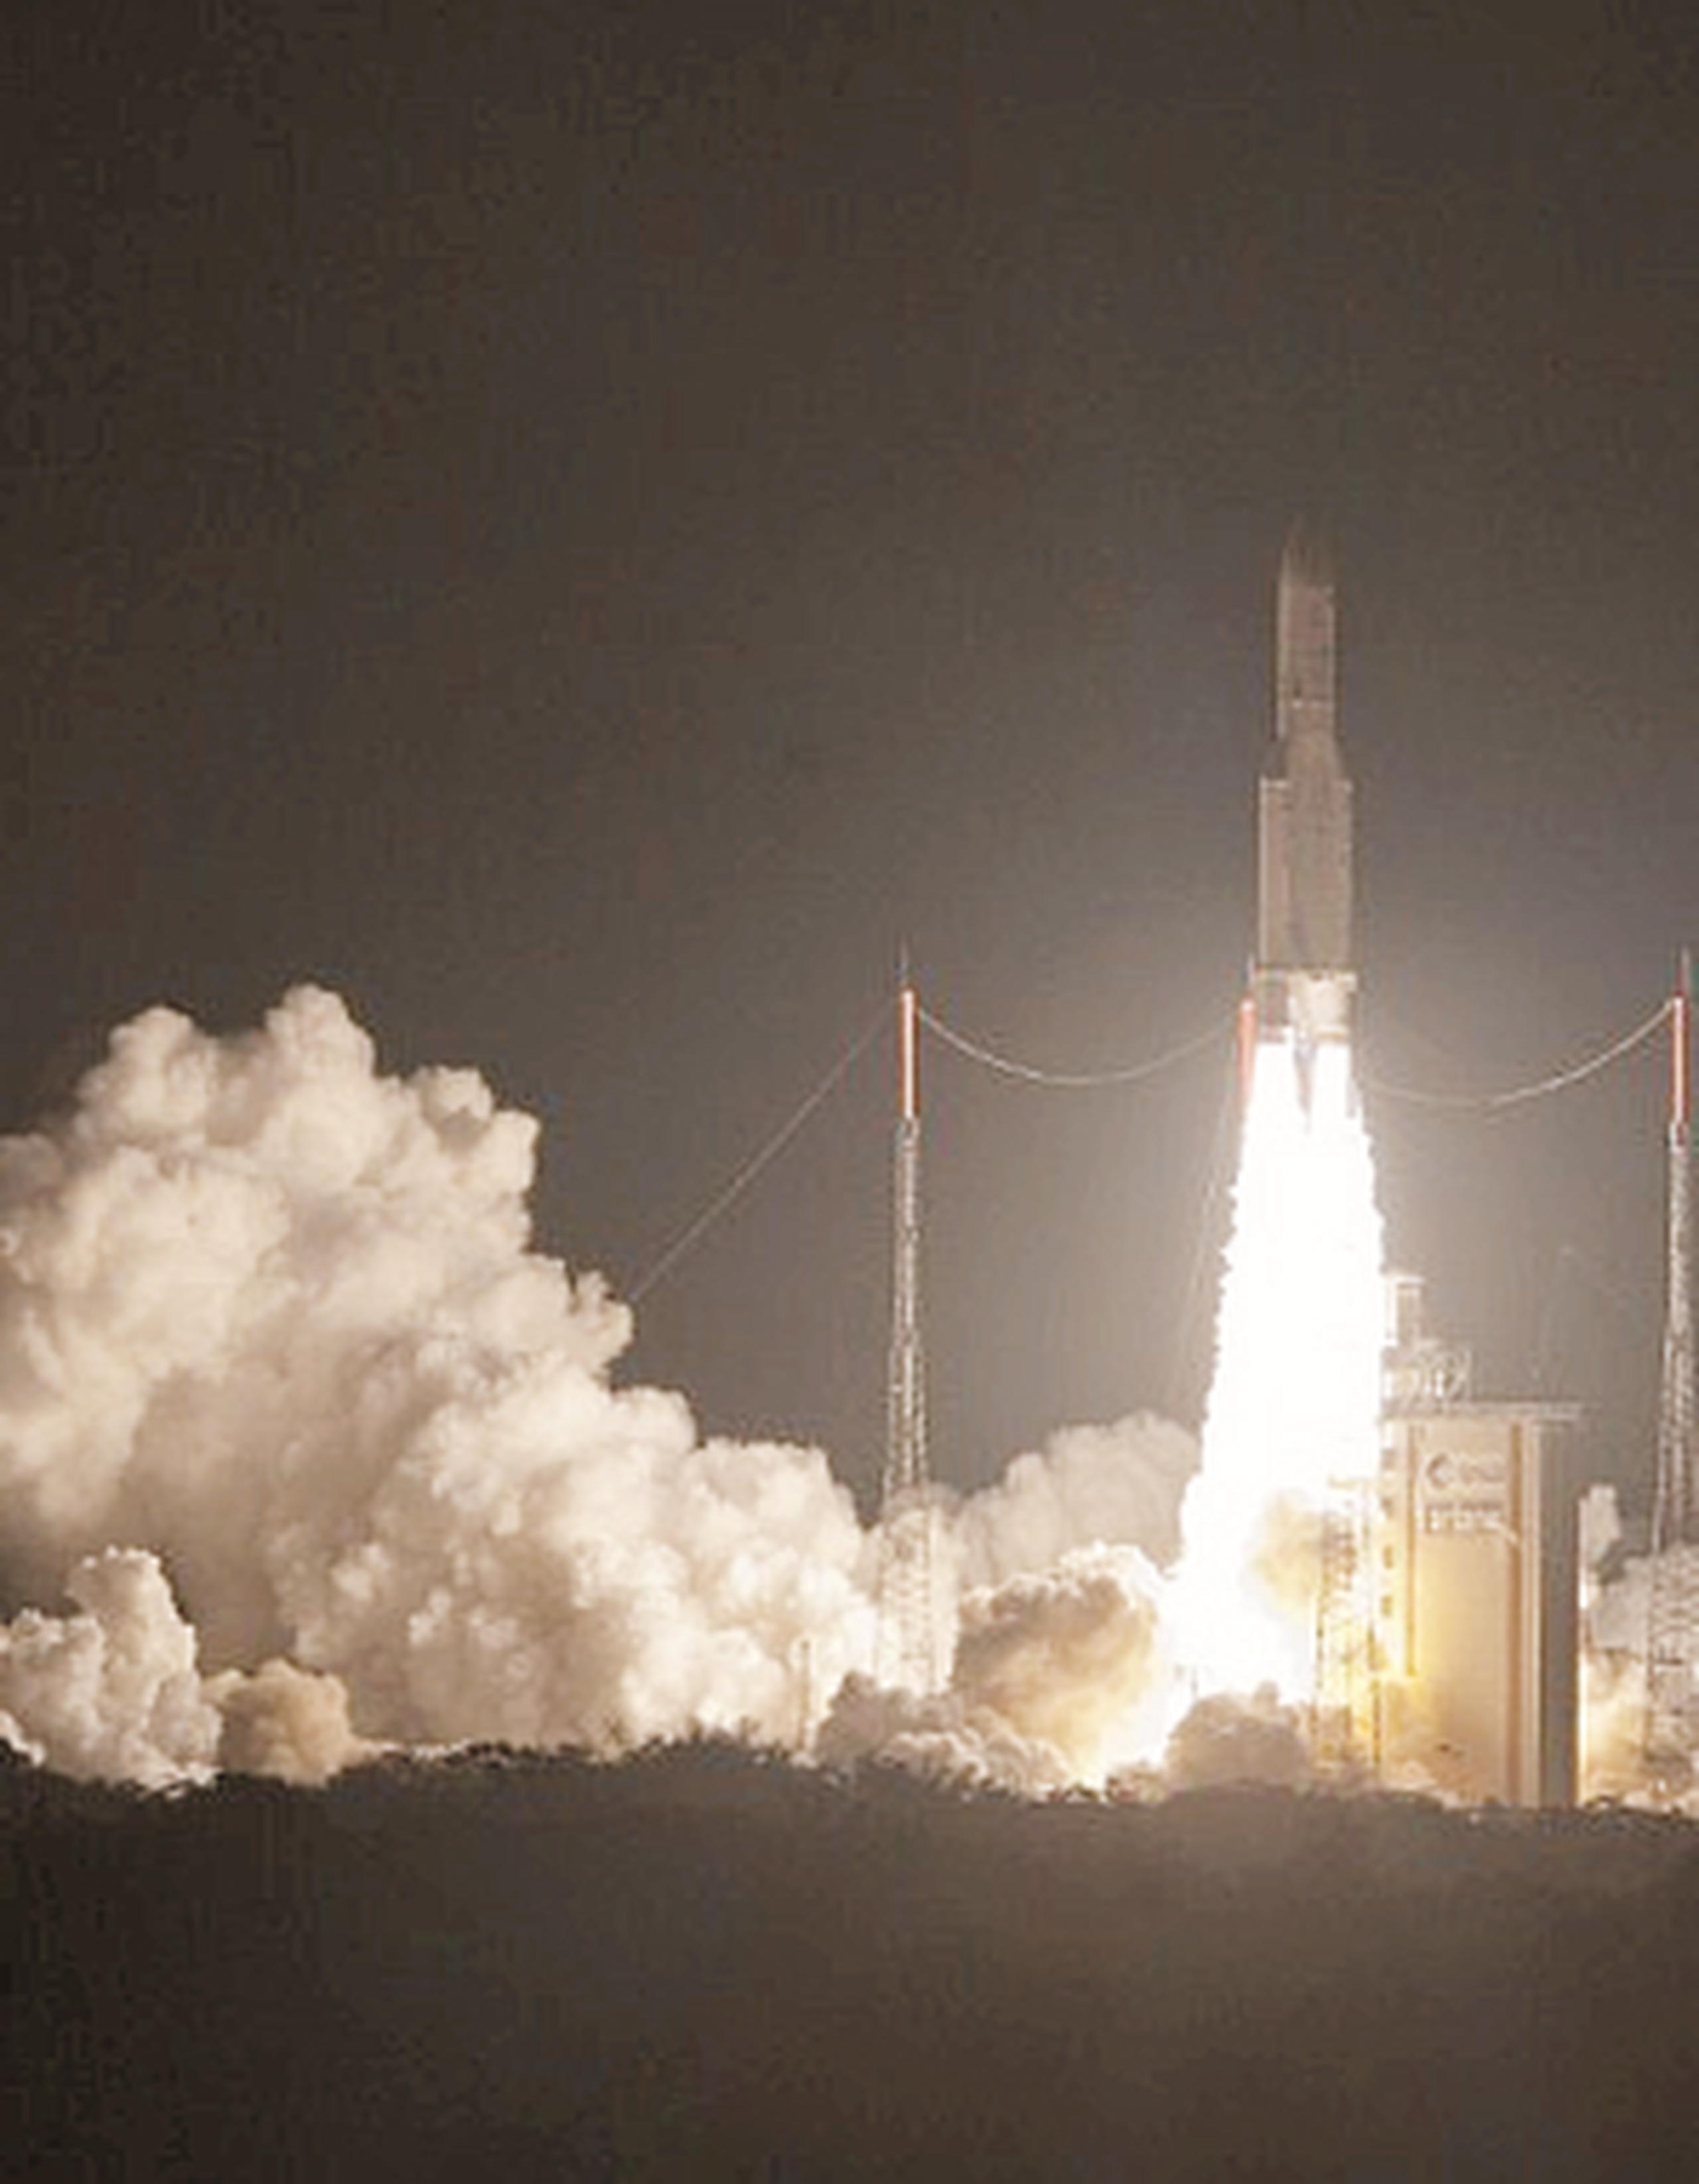 El cohete Ariane 5 especialmente configurado para esta misión al servicio de la Agencia Espacial Europea (ESA) despegó hoy de la base de Kurú, en la Guayana francesa. (Archivo)